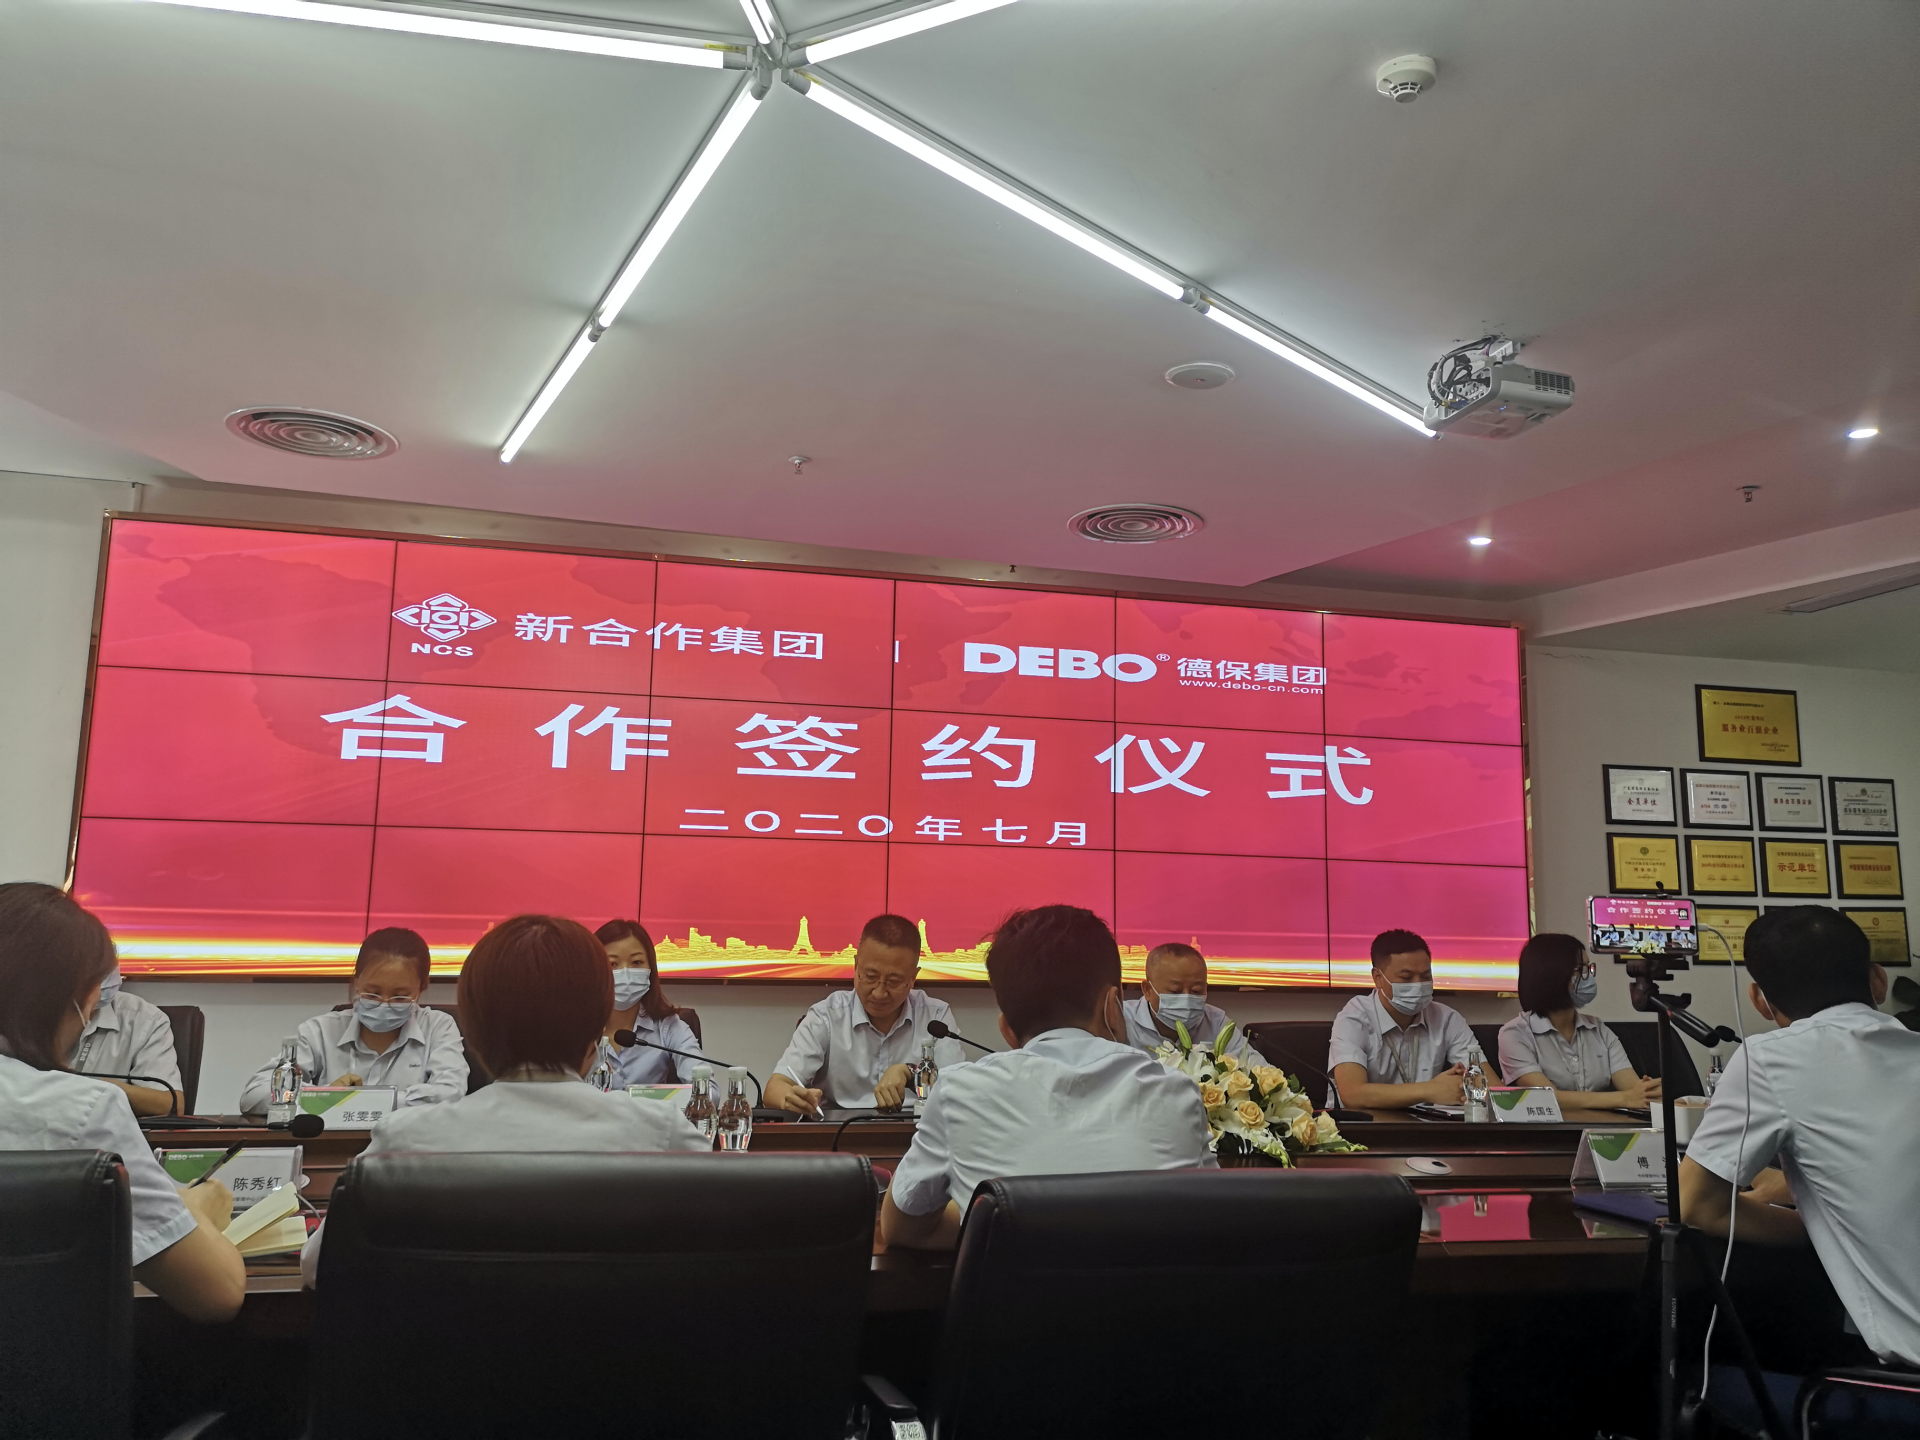 深圳食品企业德保集团与央企新合作集团达成战略合作  开展中央厨房建设运营